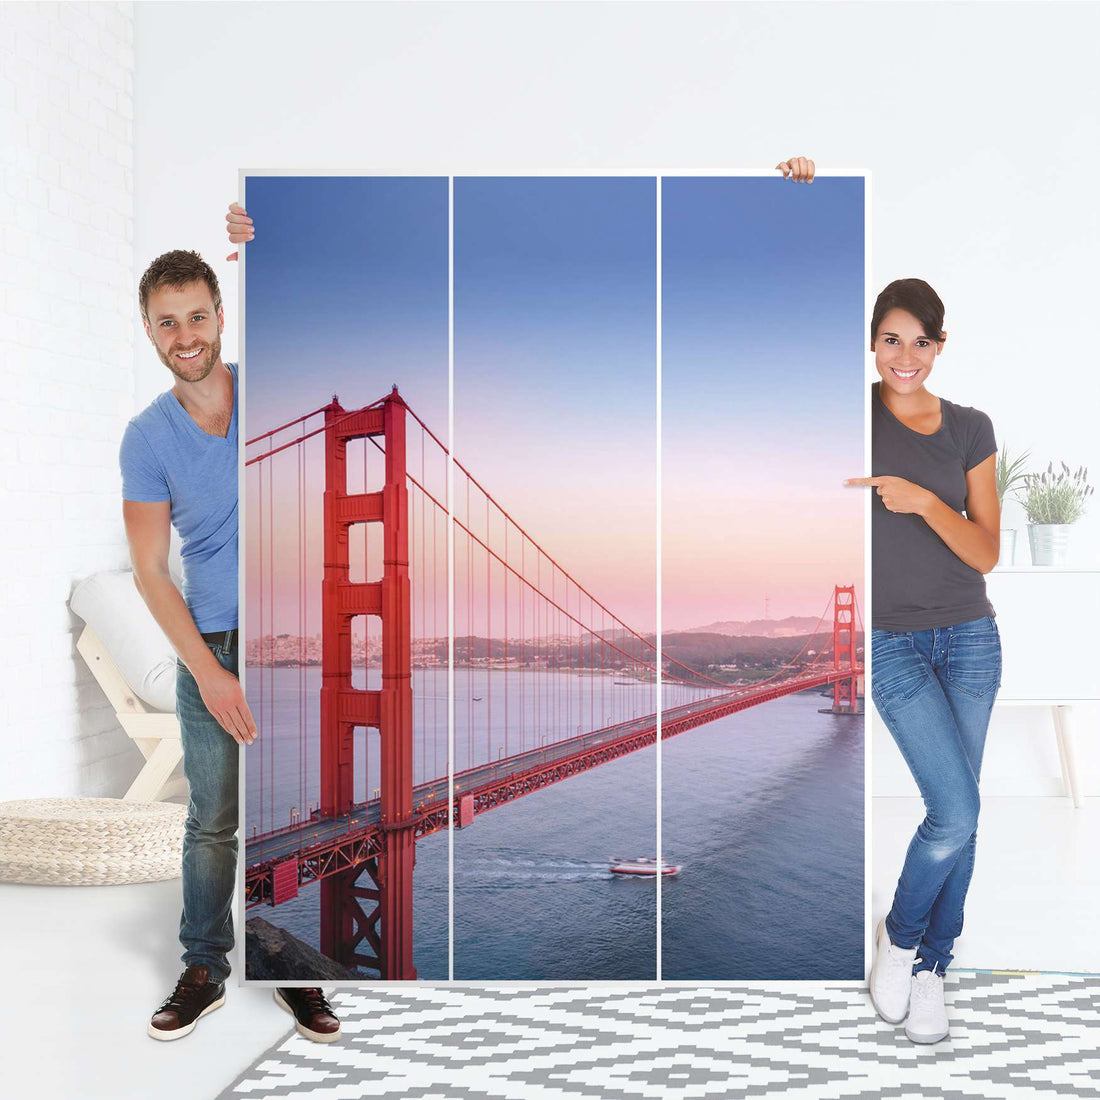 Folie für Möbel Golden Gate - IKEA Pax Schrank 201 cm Höhe - 3 Türen - Folie